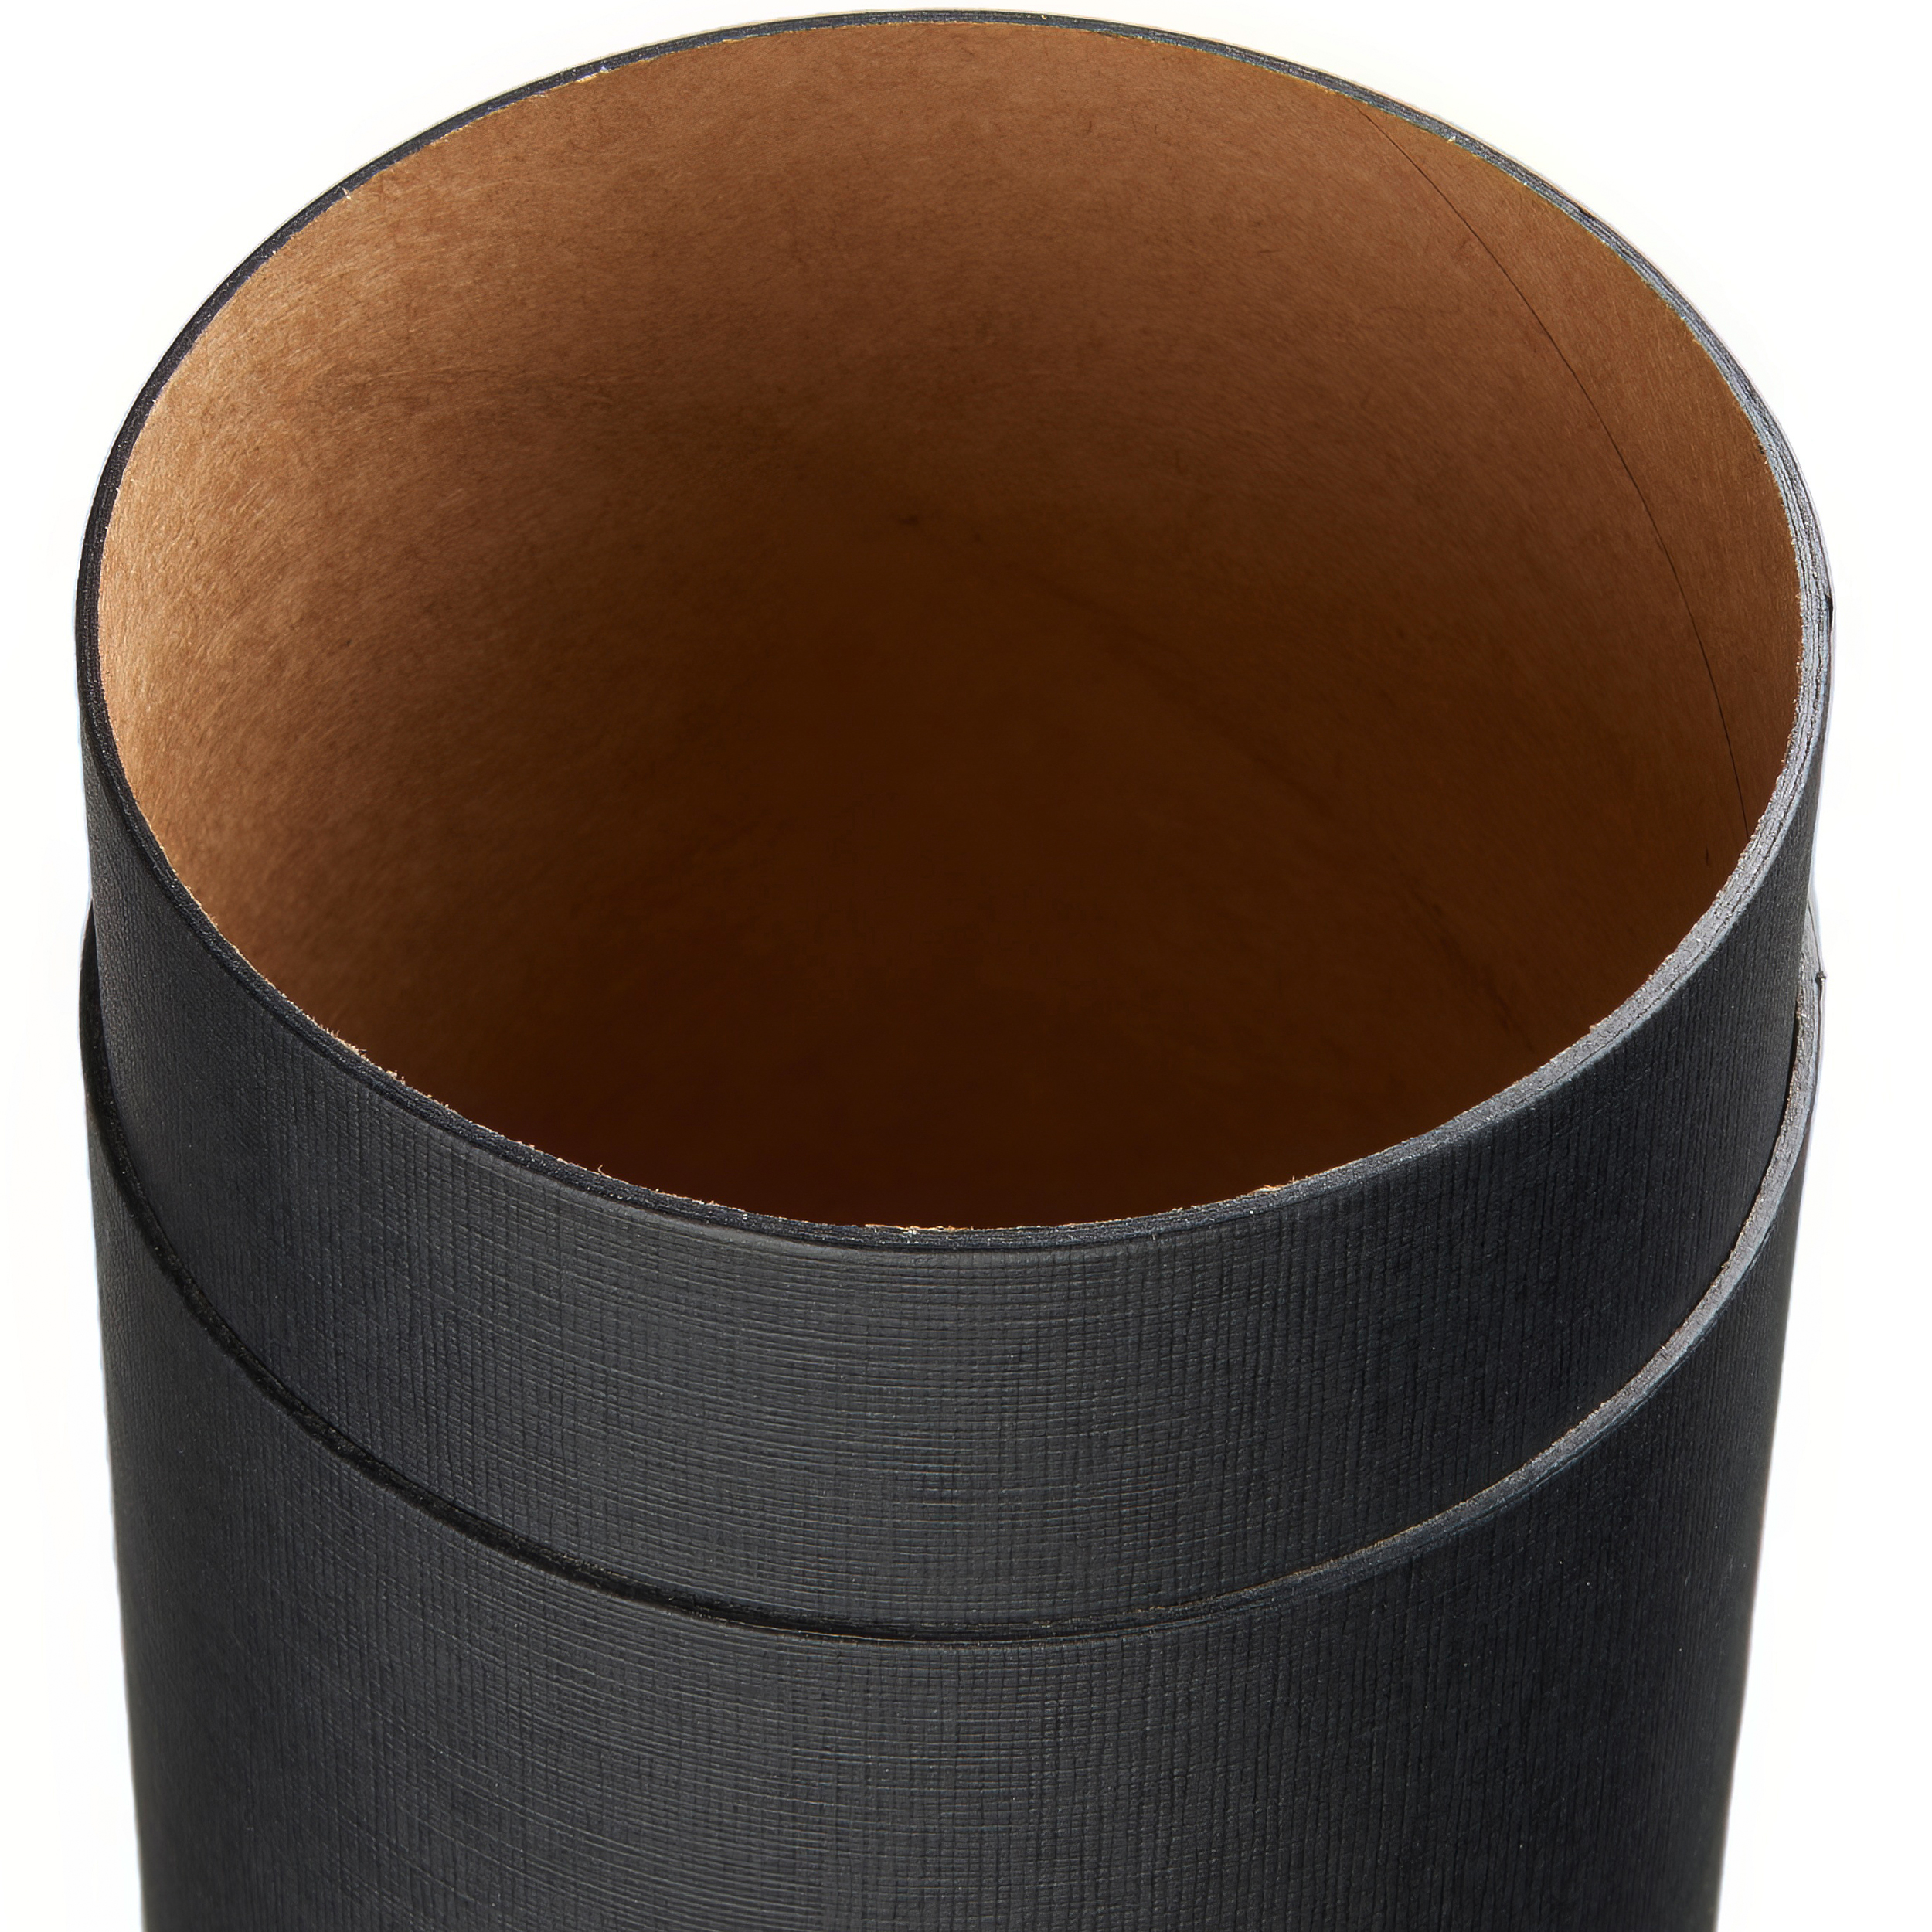 Pappdose schwarz linon  |100 x 79 mm | food grade